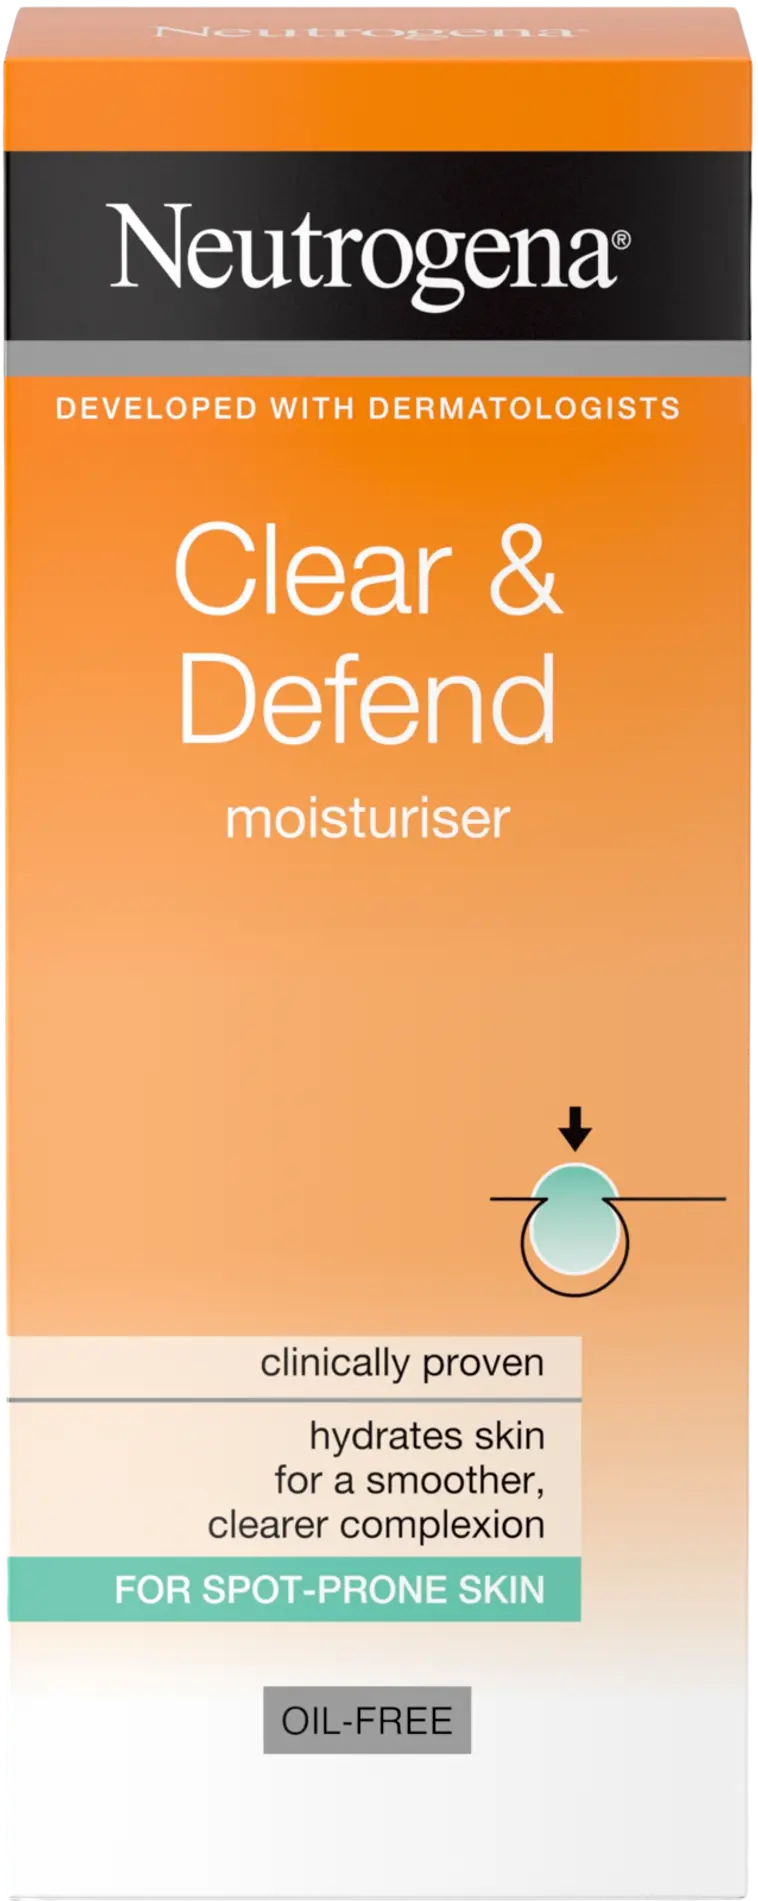 Neutrogena Clear & Defend Moisturiser kosteusvoide 50 ml - 1